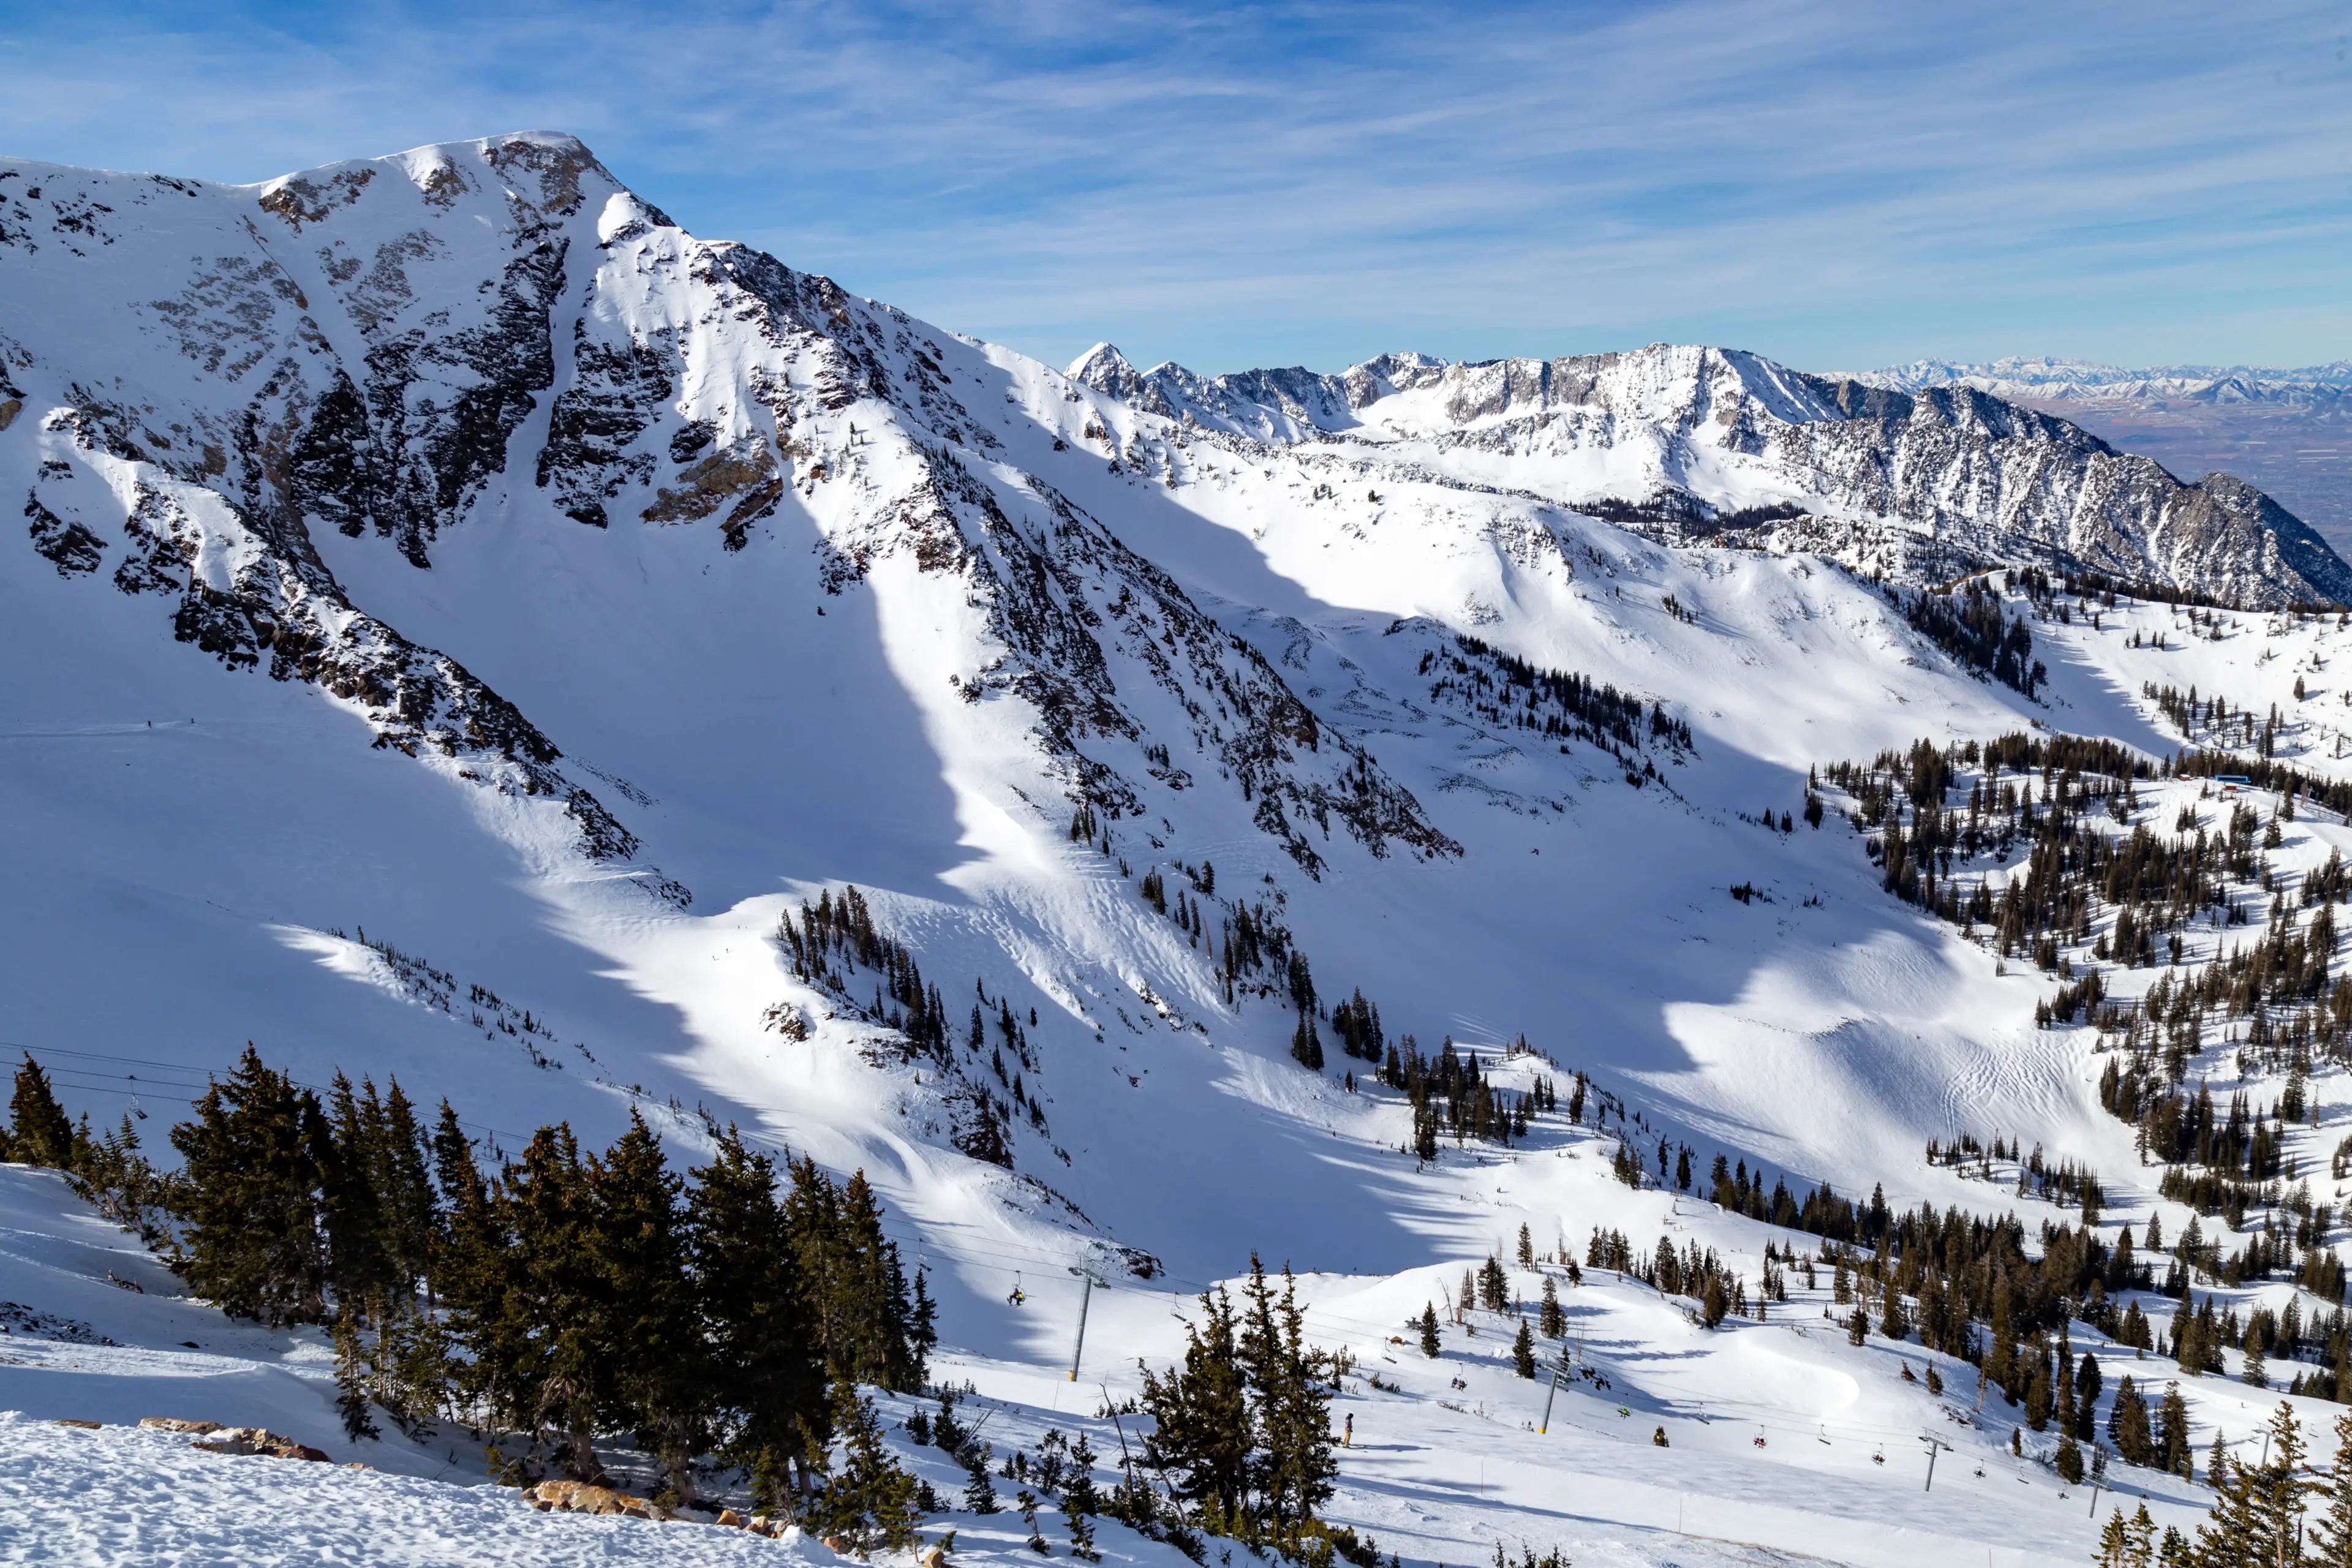 Skiing in Utah: The Slopes at Snowbird